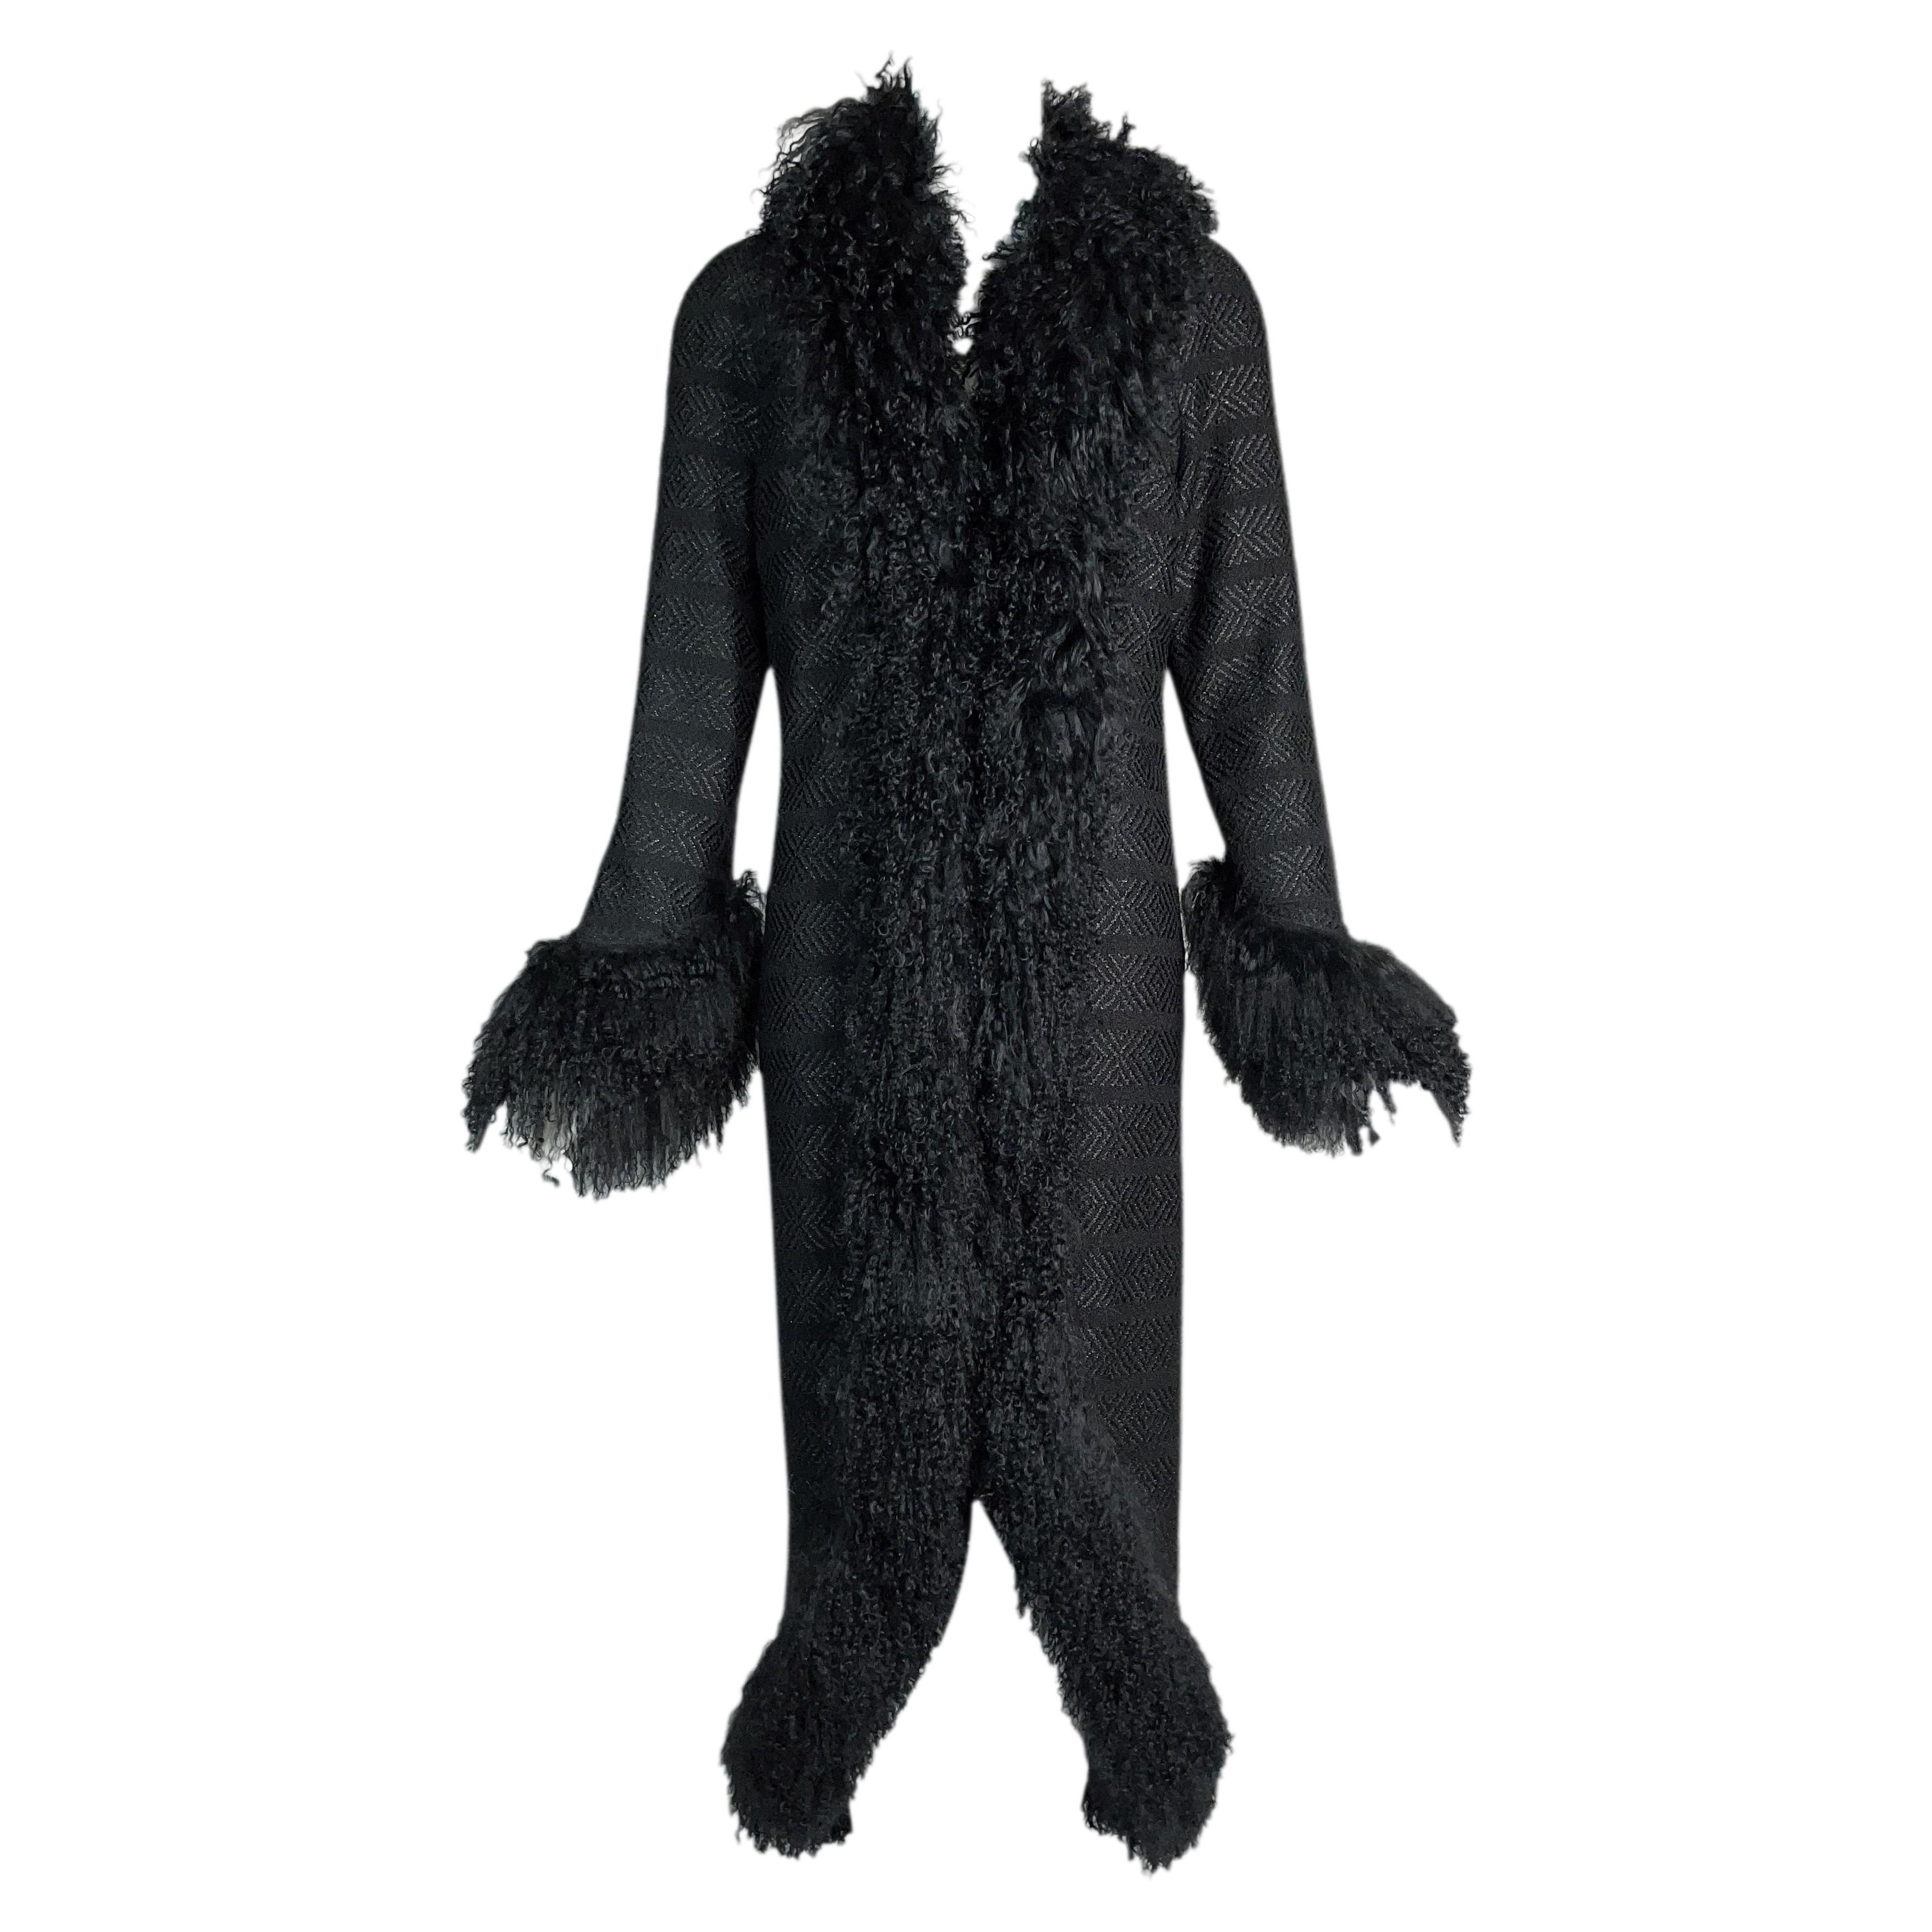 F/W 2008 Chanel Runway Black Metallic Tweed Shearling Fur Coat Jacket